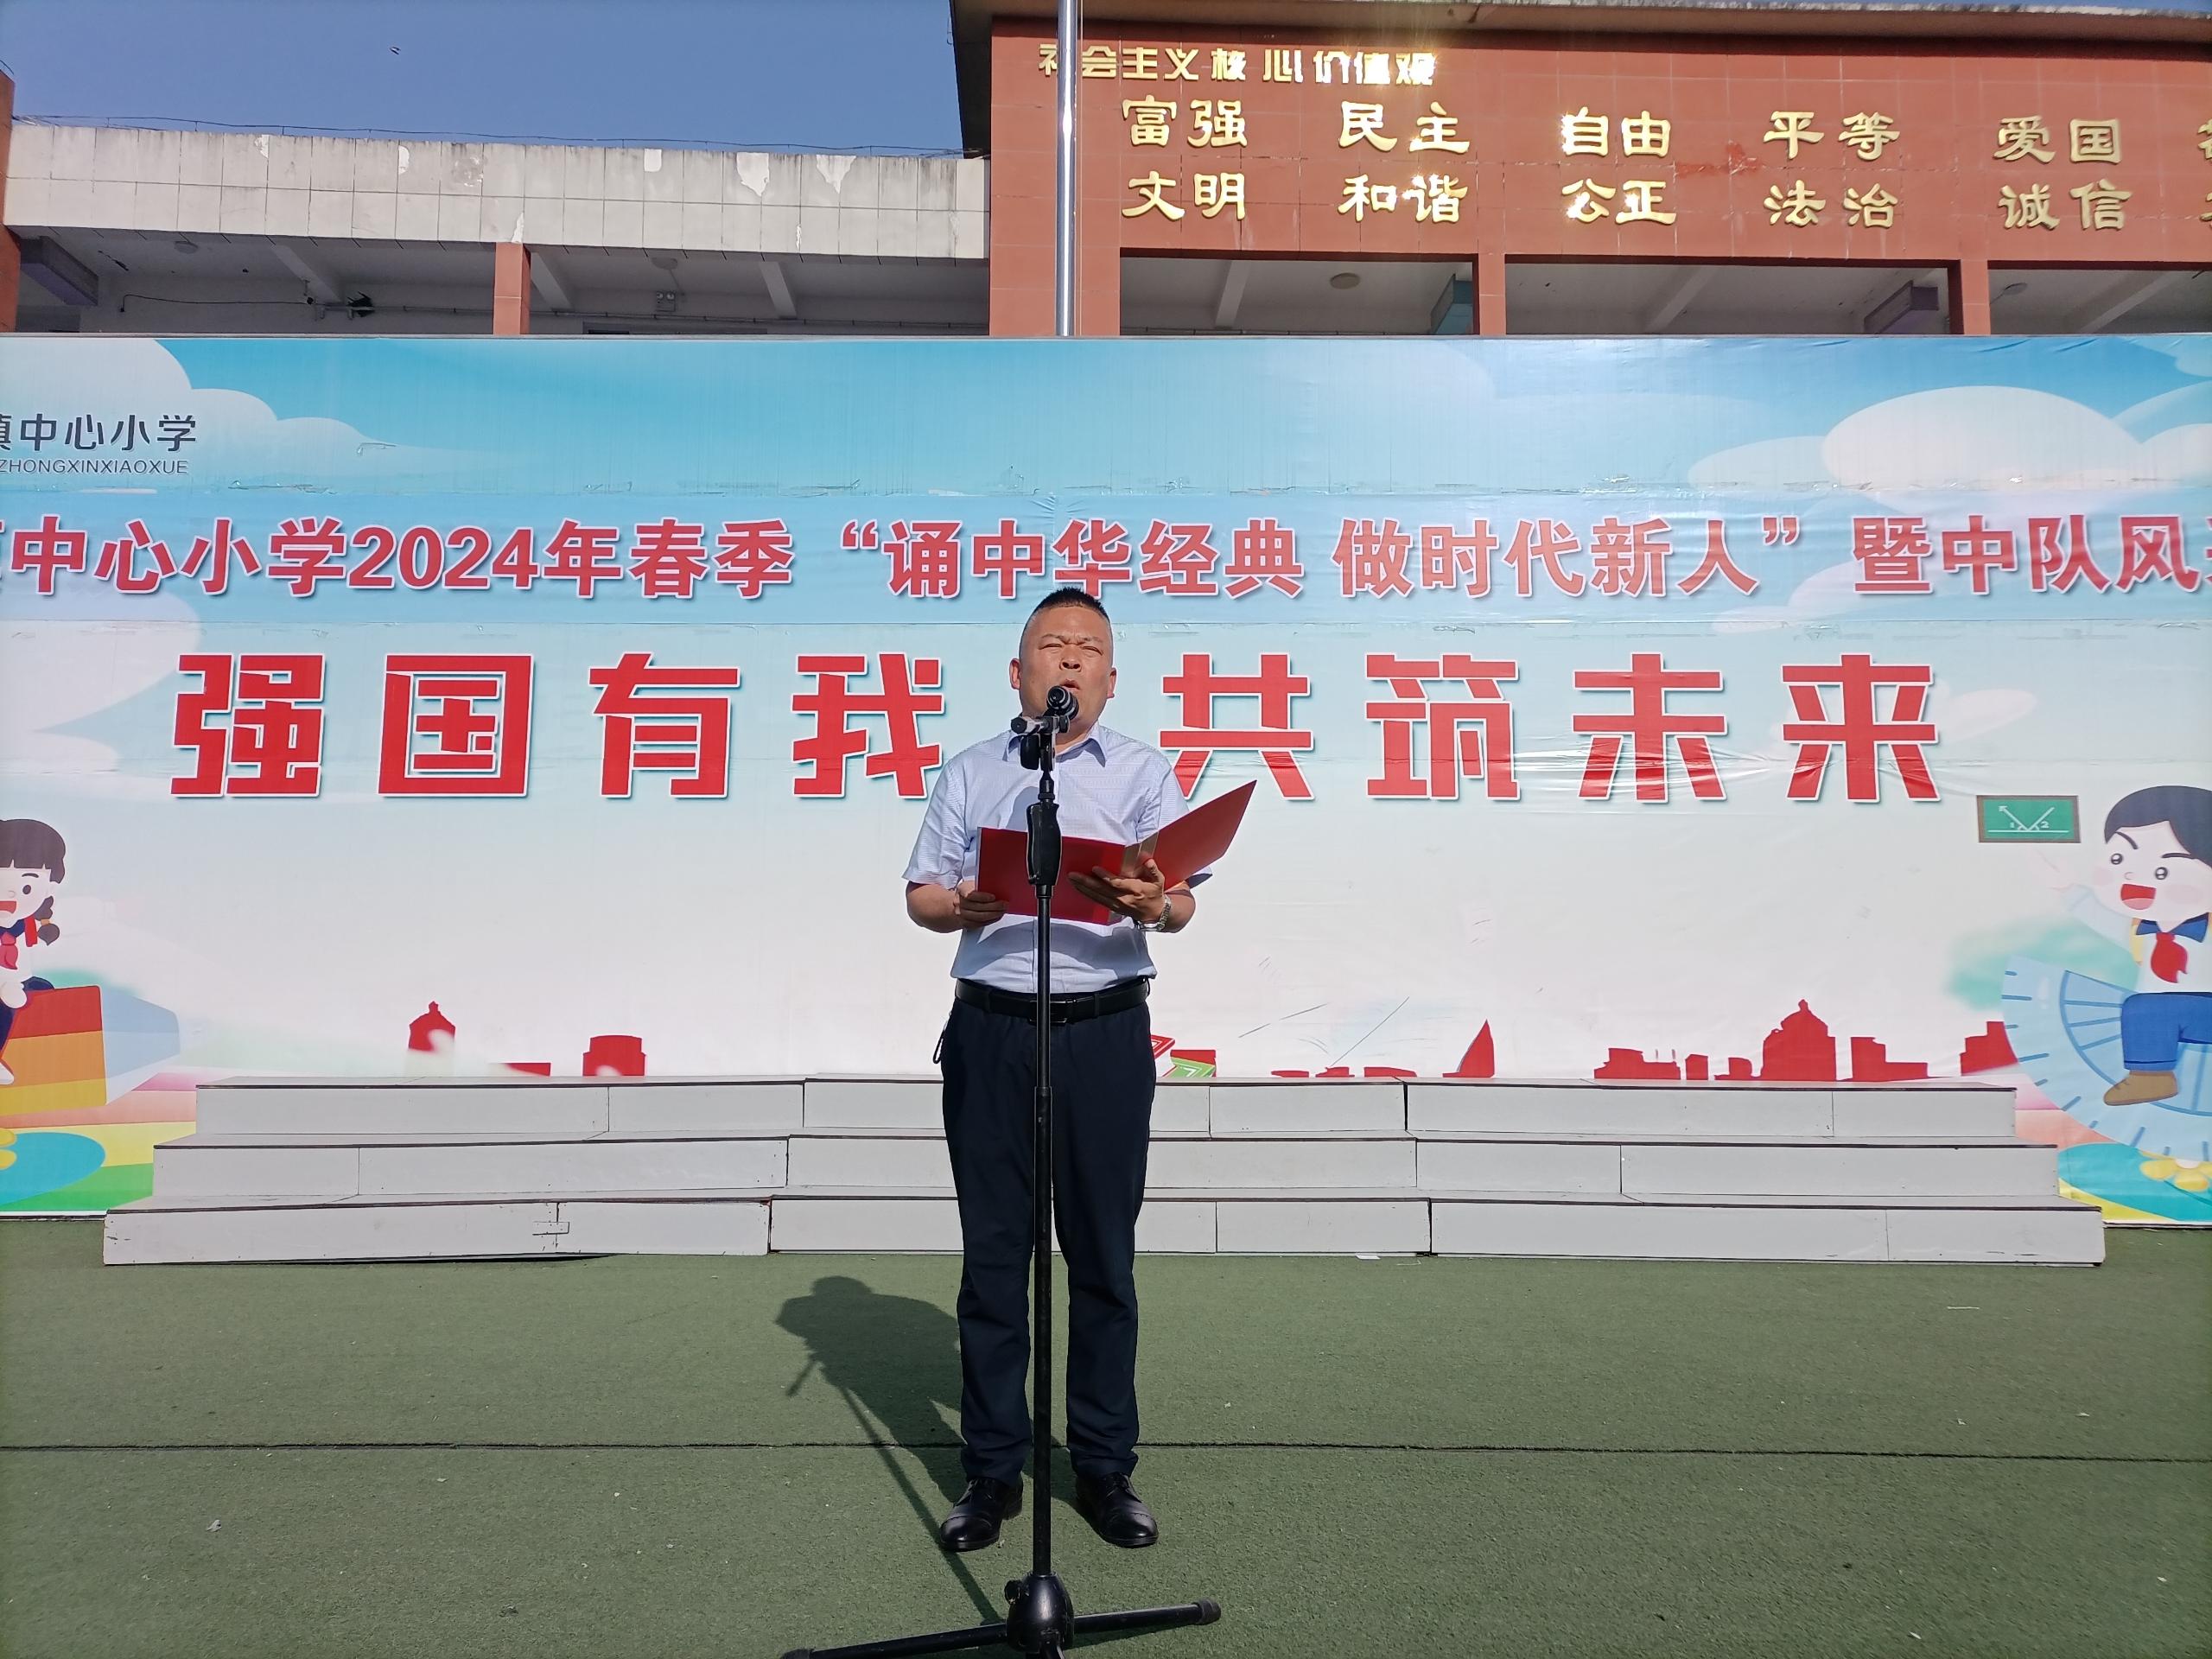 诵中华经典、做时代新人 ——汉阴县涧池镇小学教育集团举行2024年经典诵读活动